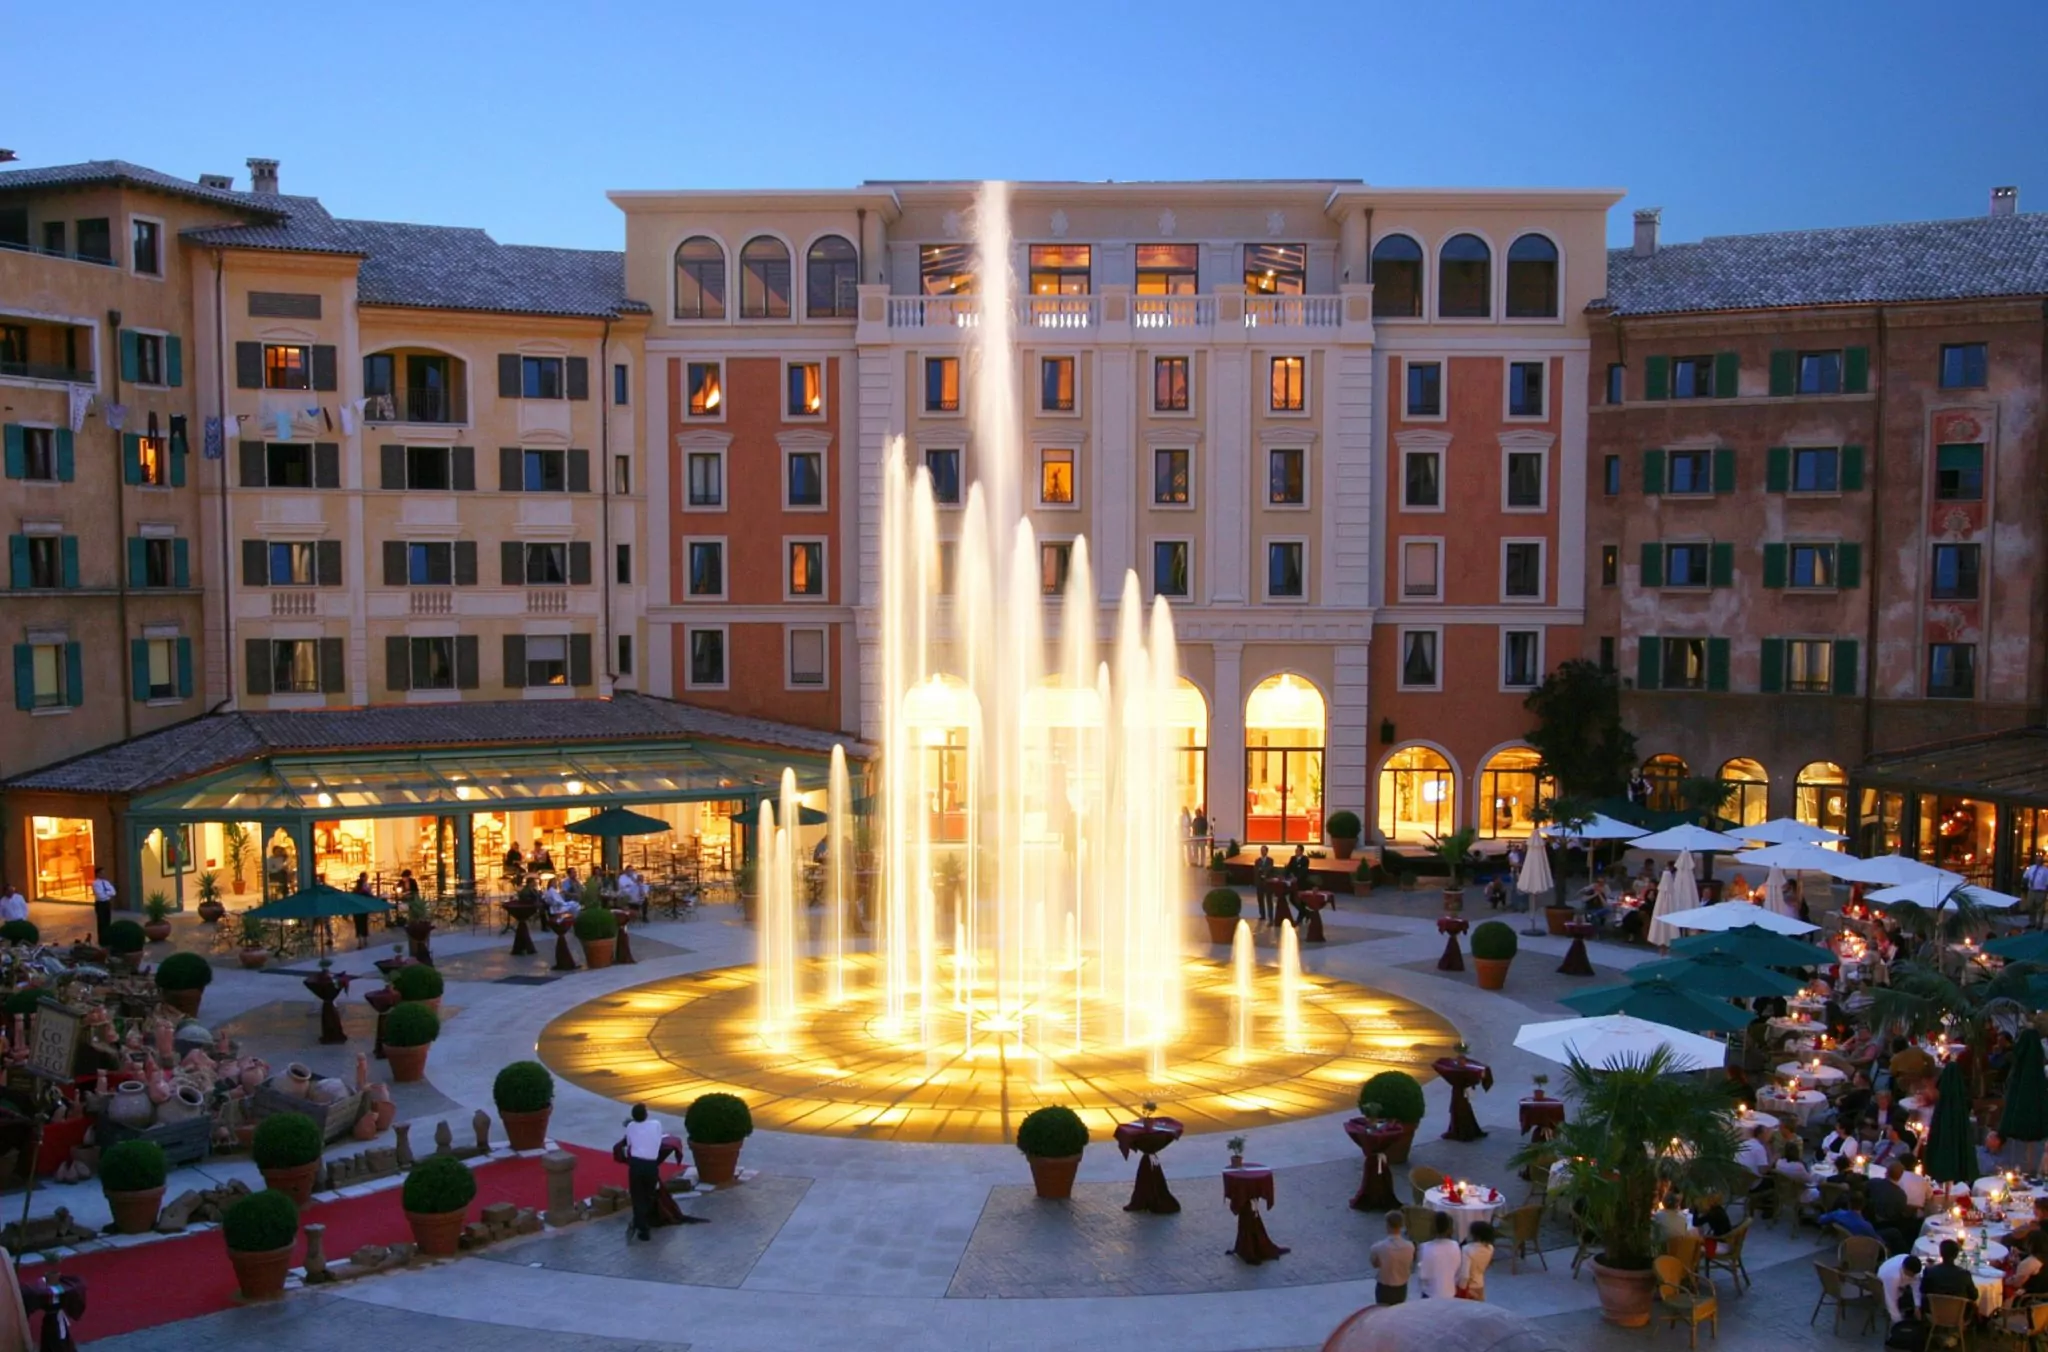 Blick auf die Plaza vor dem Hotel Colosseo © Europa Park